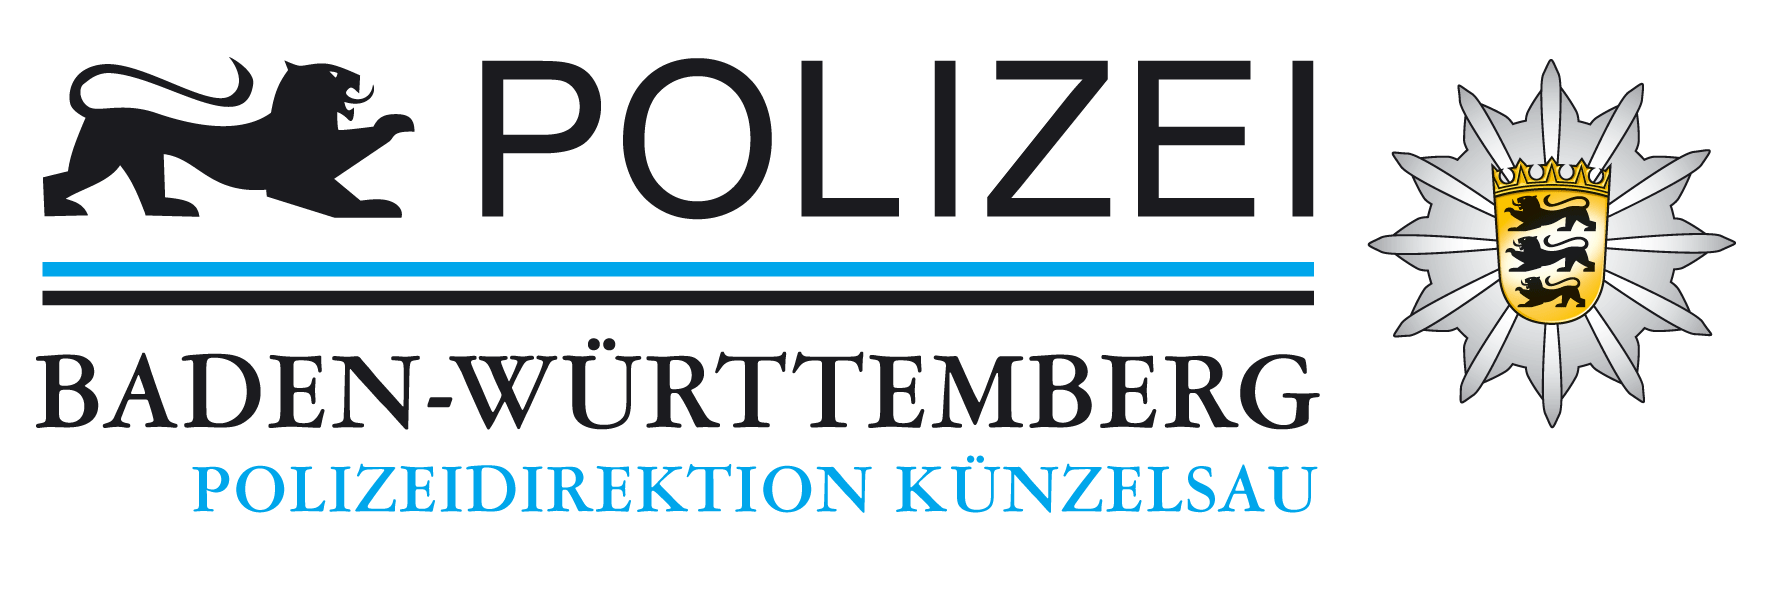 Polizeidirektion Künzelsau